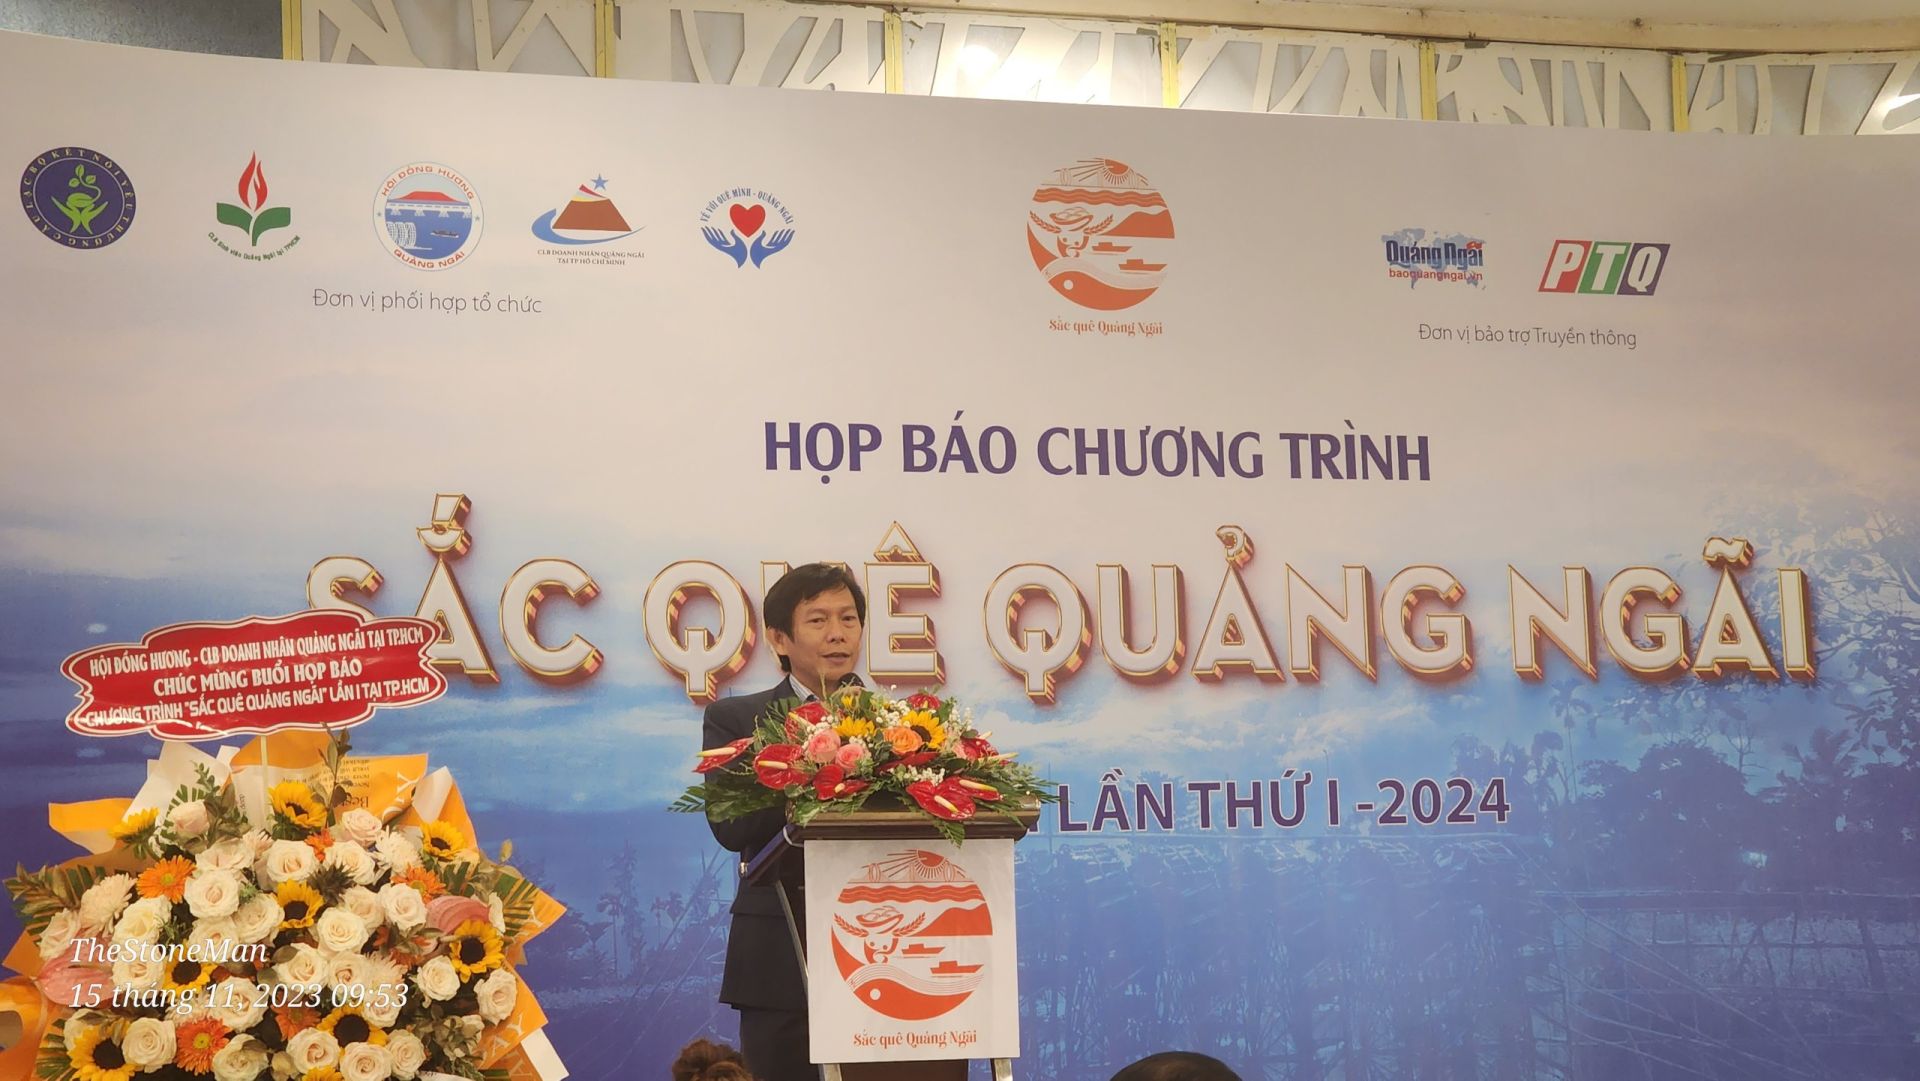 Ông Nguyễn Văn Bình – CT CLB Doanh Nhân Quảng Ngãi tại TPHCM tham dư chương trình phát biểu